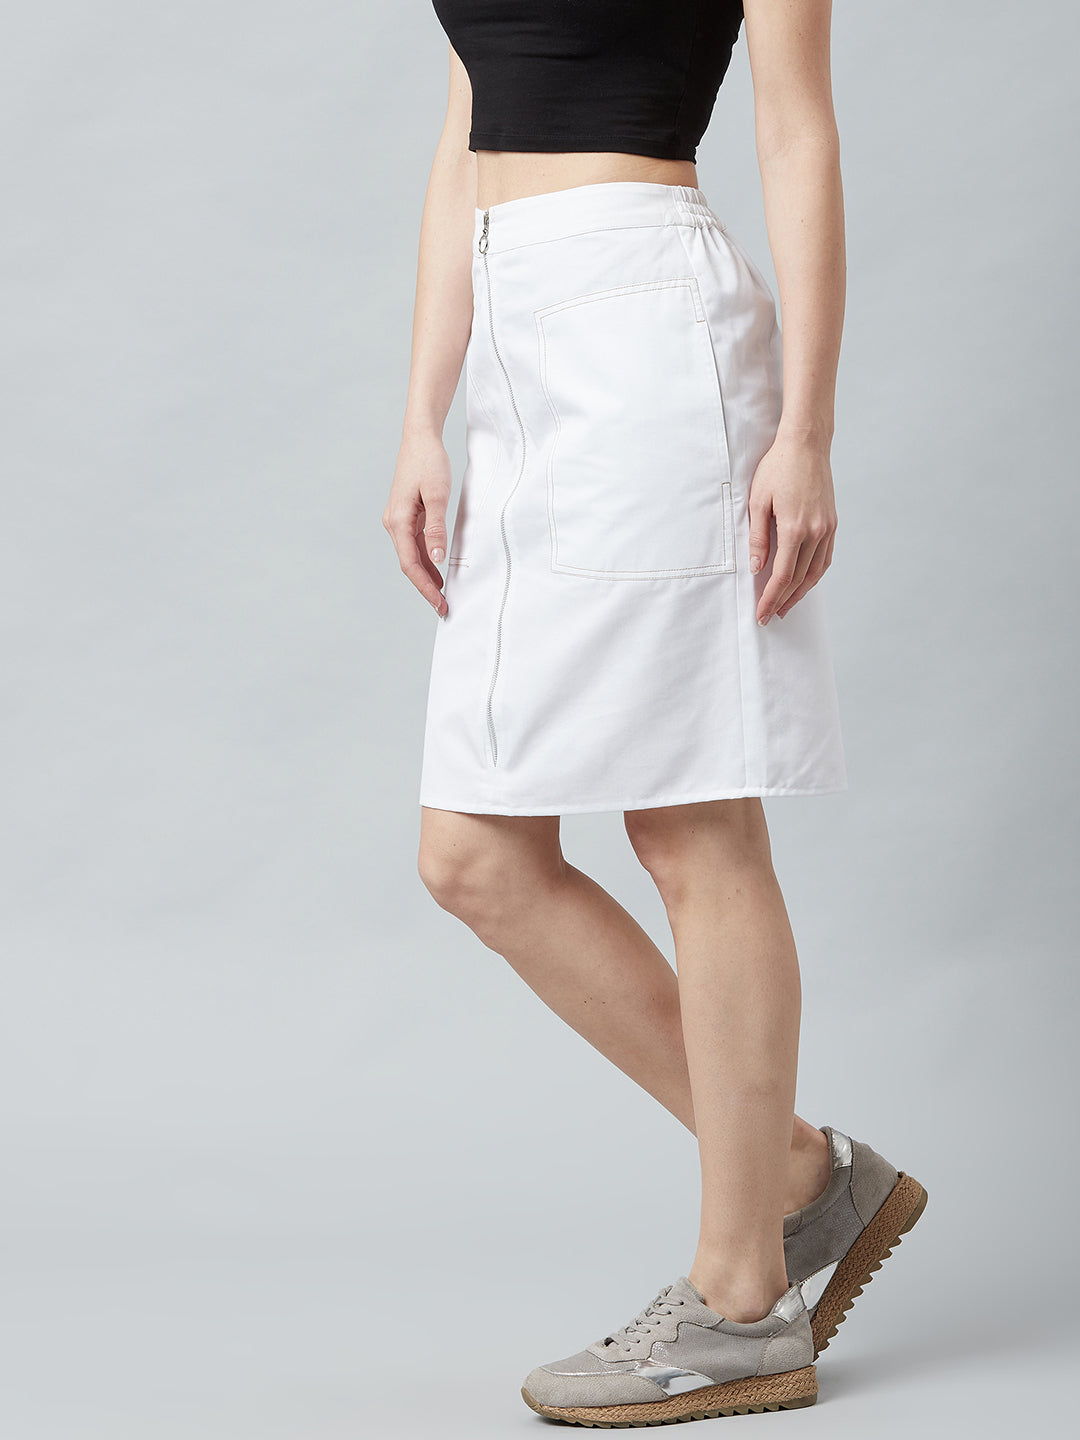 Athena Women White Solid Denim Straight Knee-Length Skirt - Athena Lifestyle